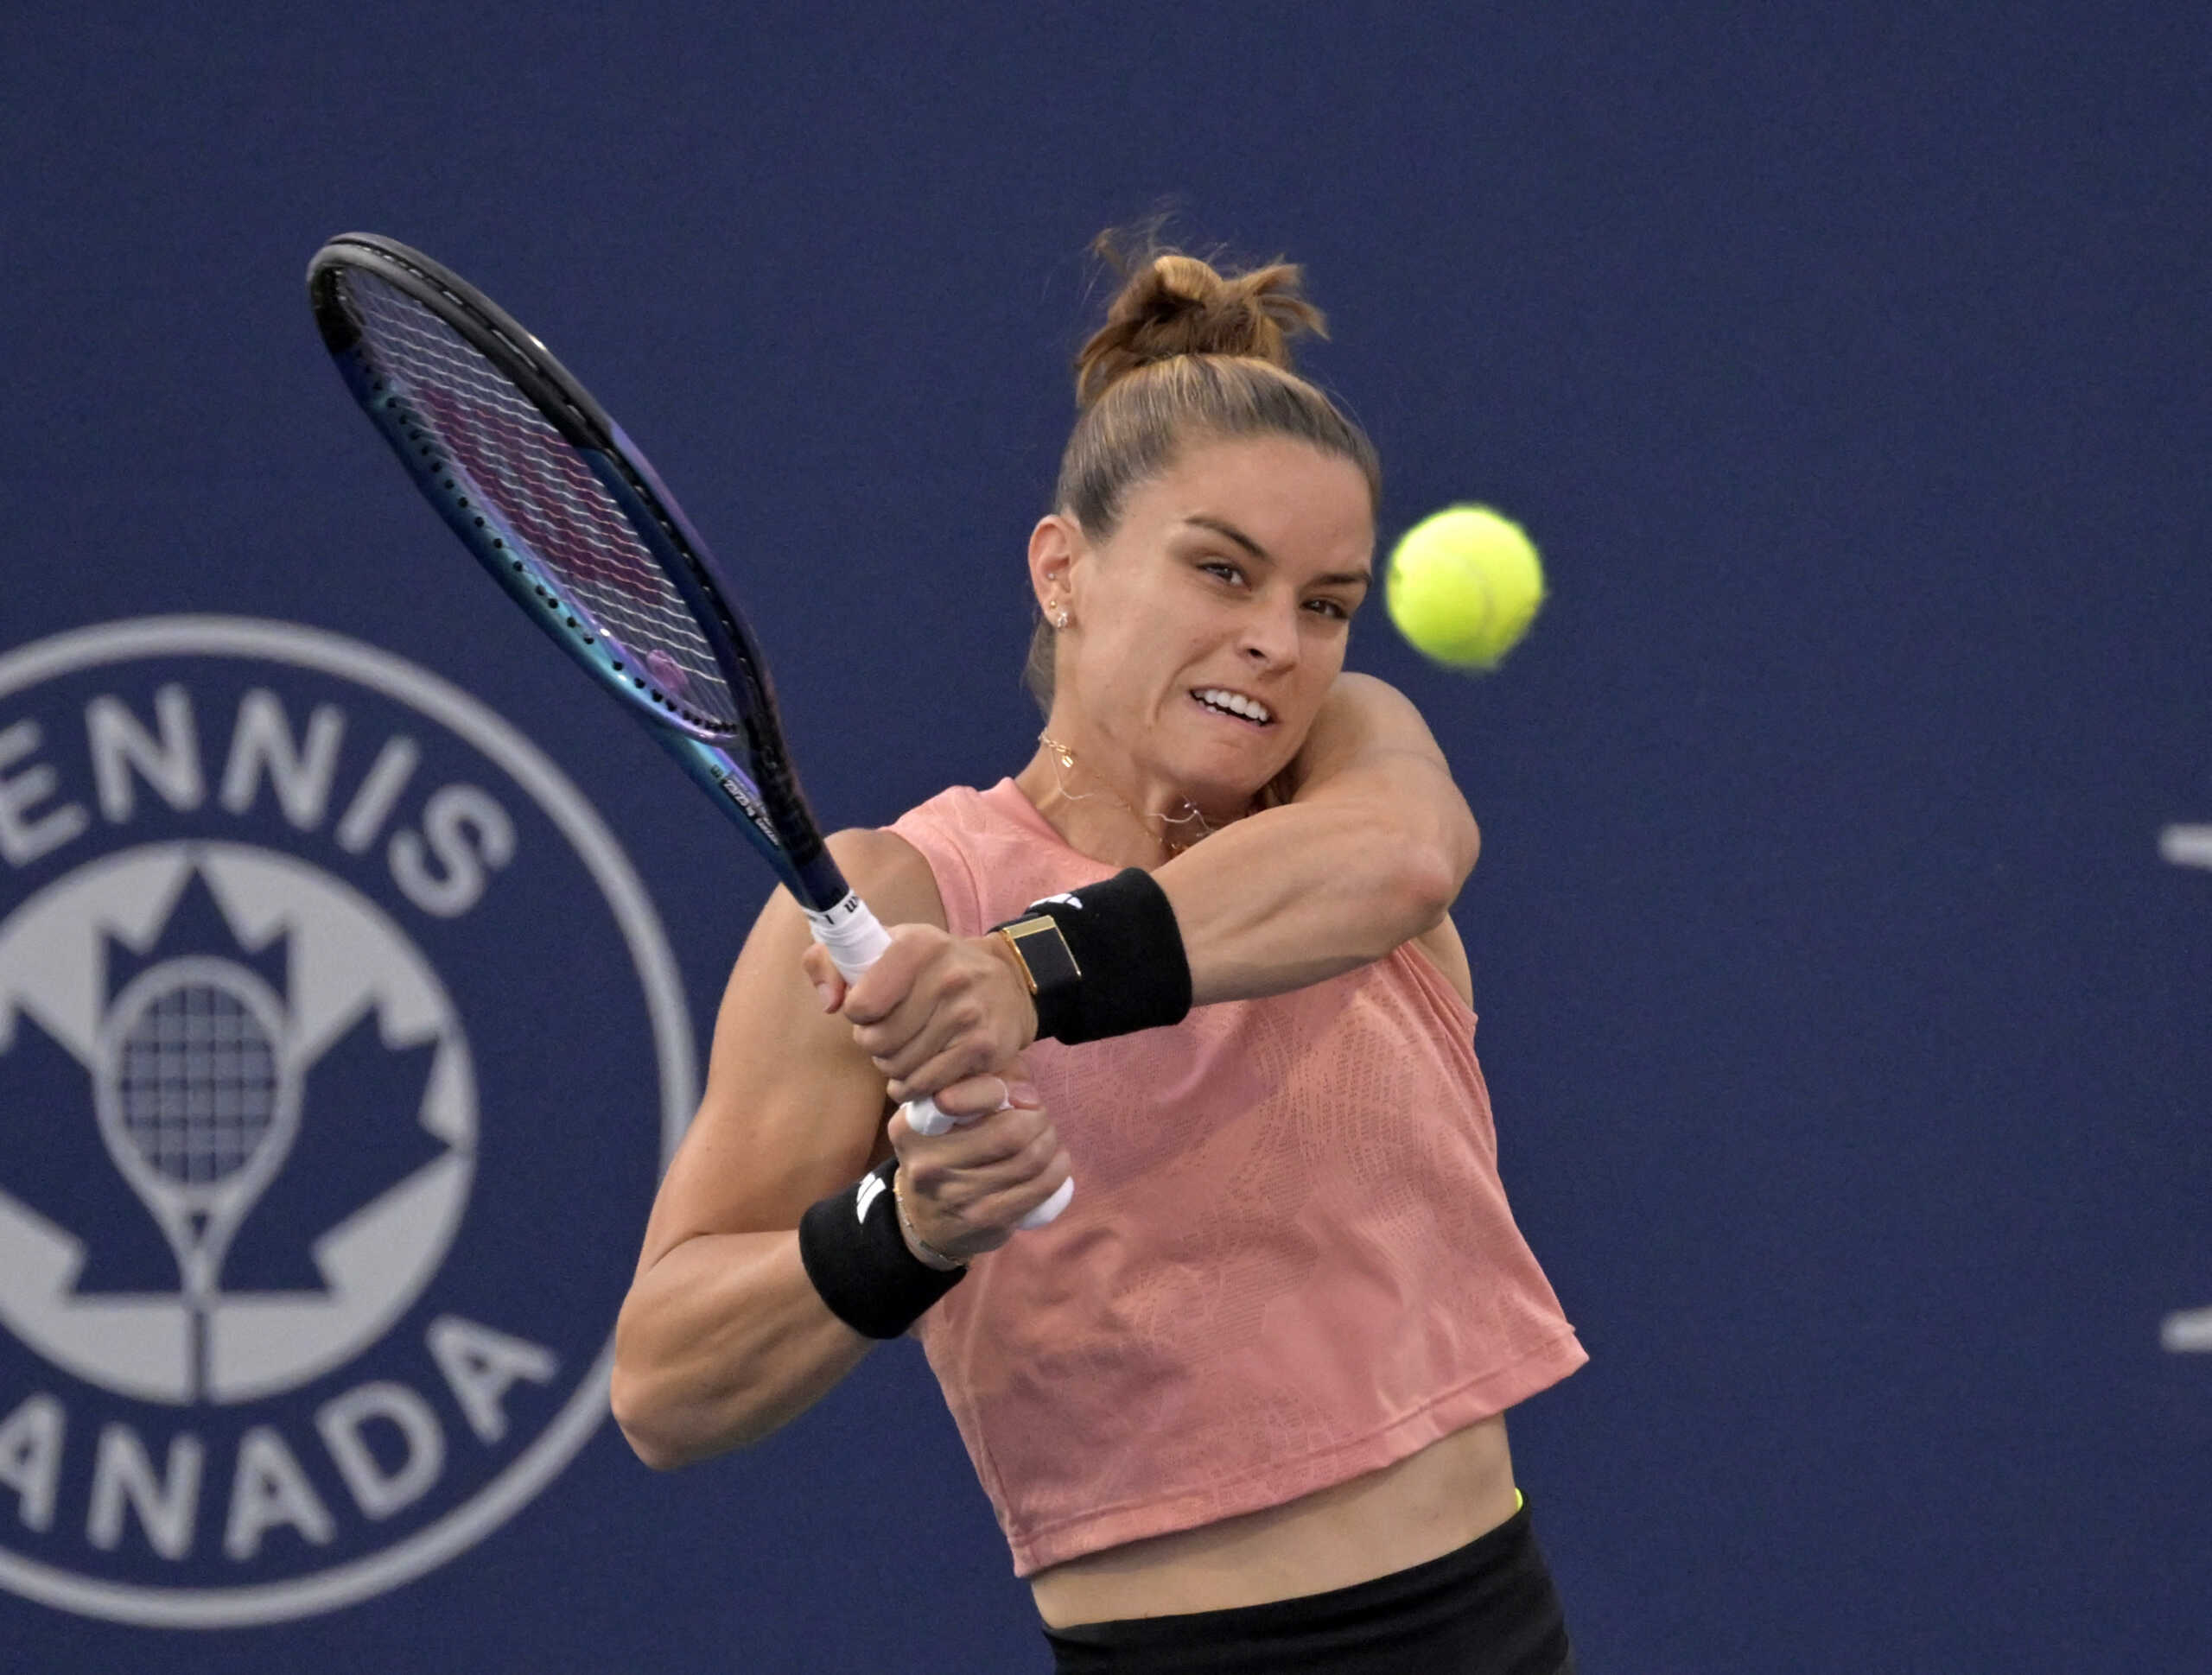 Μαρία Σάκκαρη: Αναπάντεχος αποκλεισμός από τον πρώτο γύρο του US Open